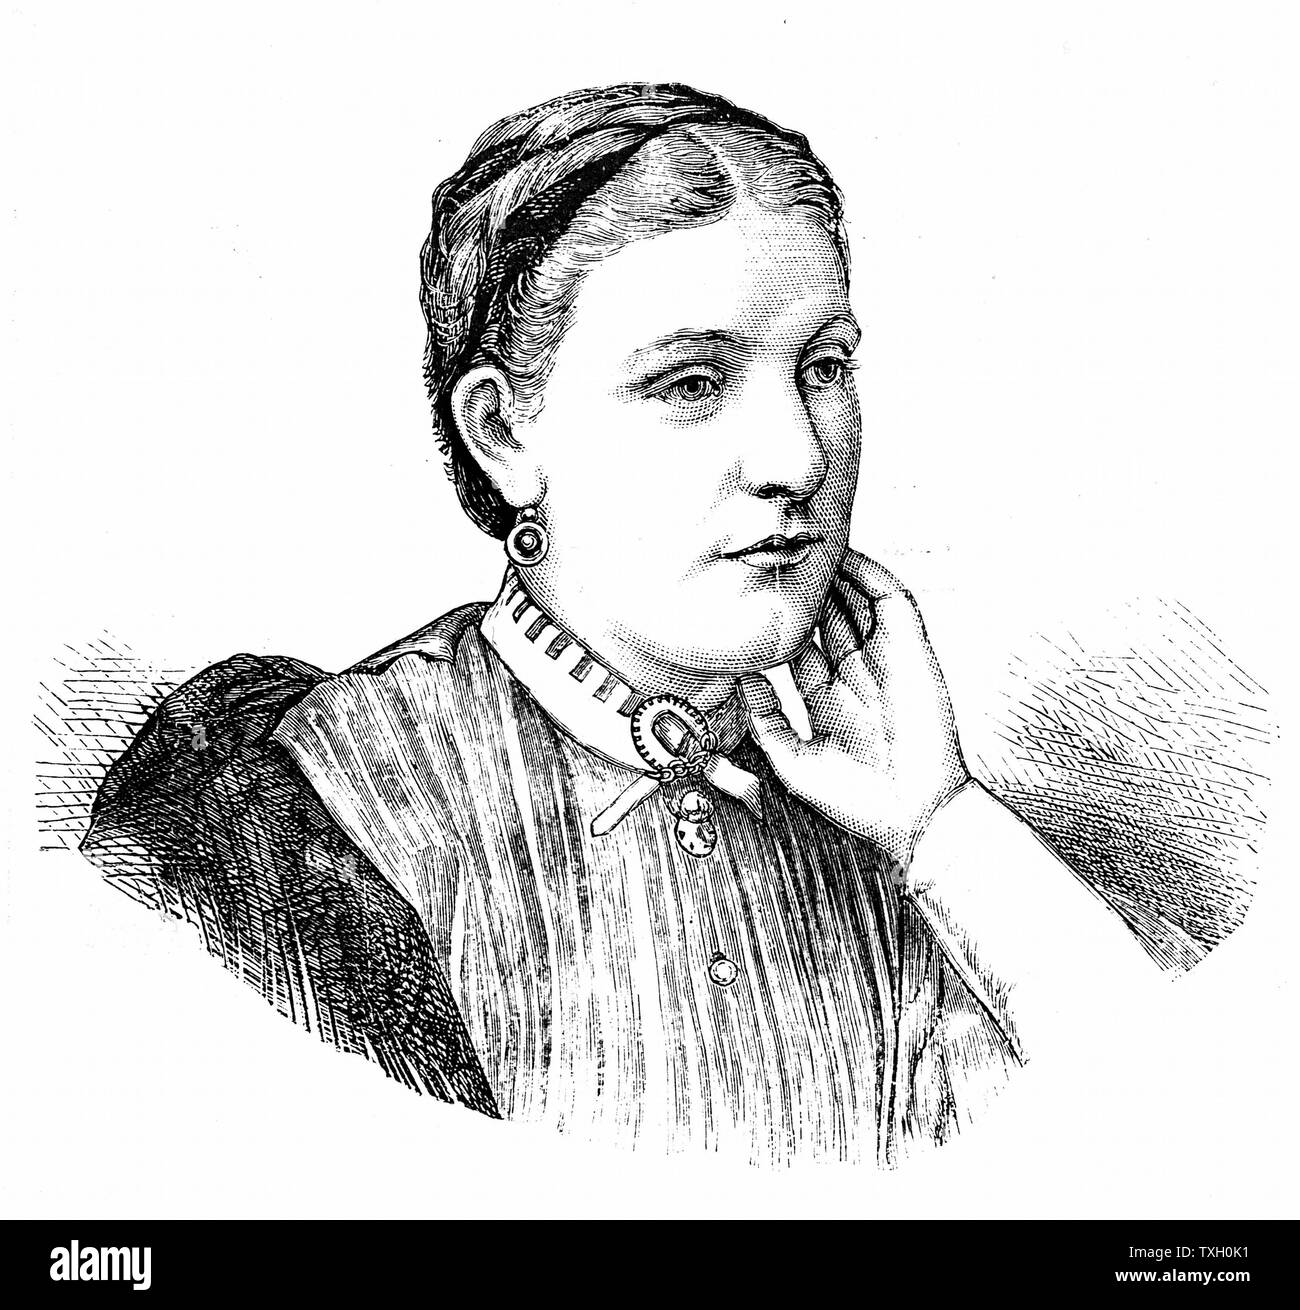 Florence Baker, épouse de l'explorateur anglais et militant anti-esclavage Samuel White Baker (1821-1893), qui a accompagné son mari dans ses expéditions africaines. La gravure sur bois de Birmingham, Mars 1870 Banque D'Images